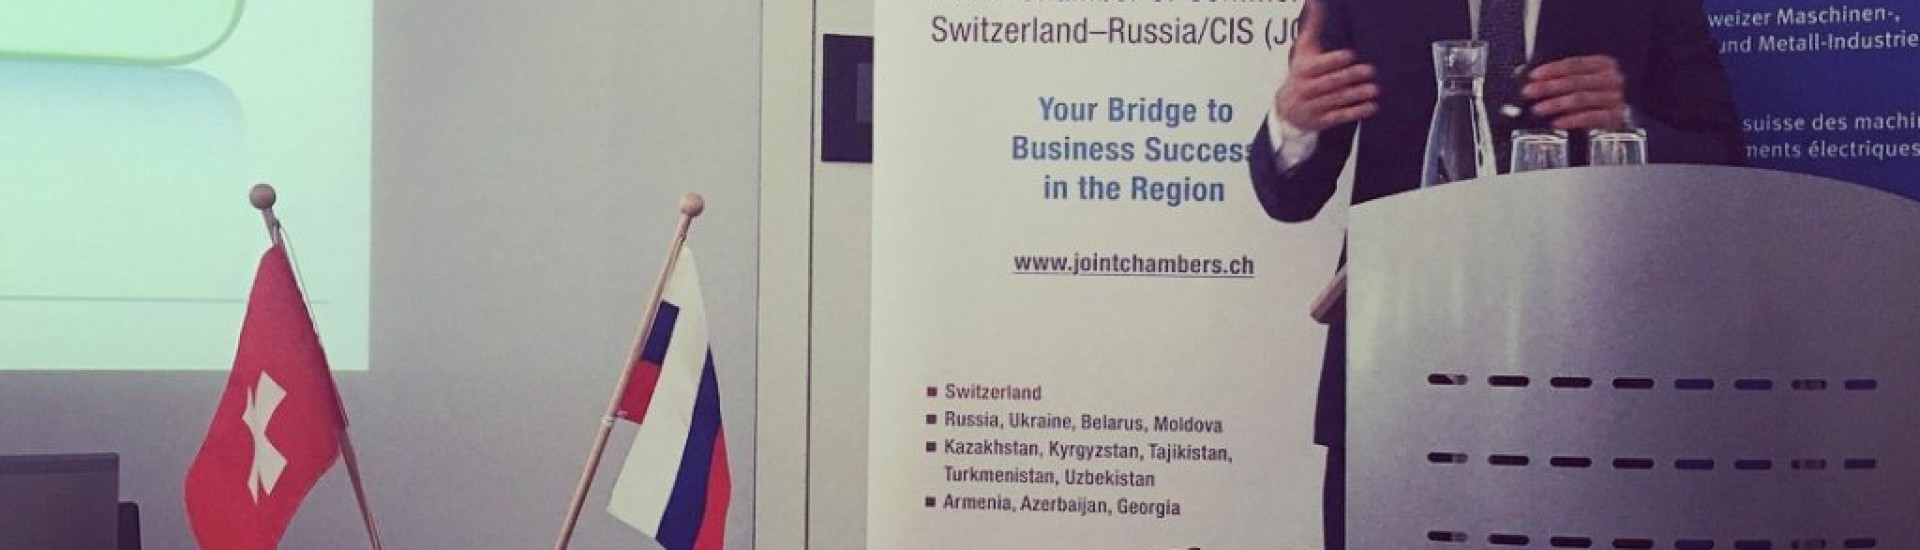 Дмитрий Самигуллин выступил в Цюрихе с презентацией: "О 
некоторых аспектах бизнеса в 
России"